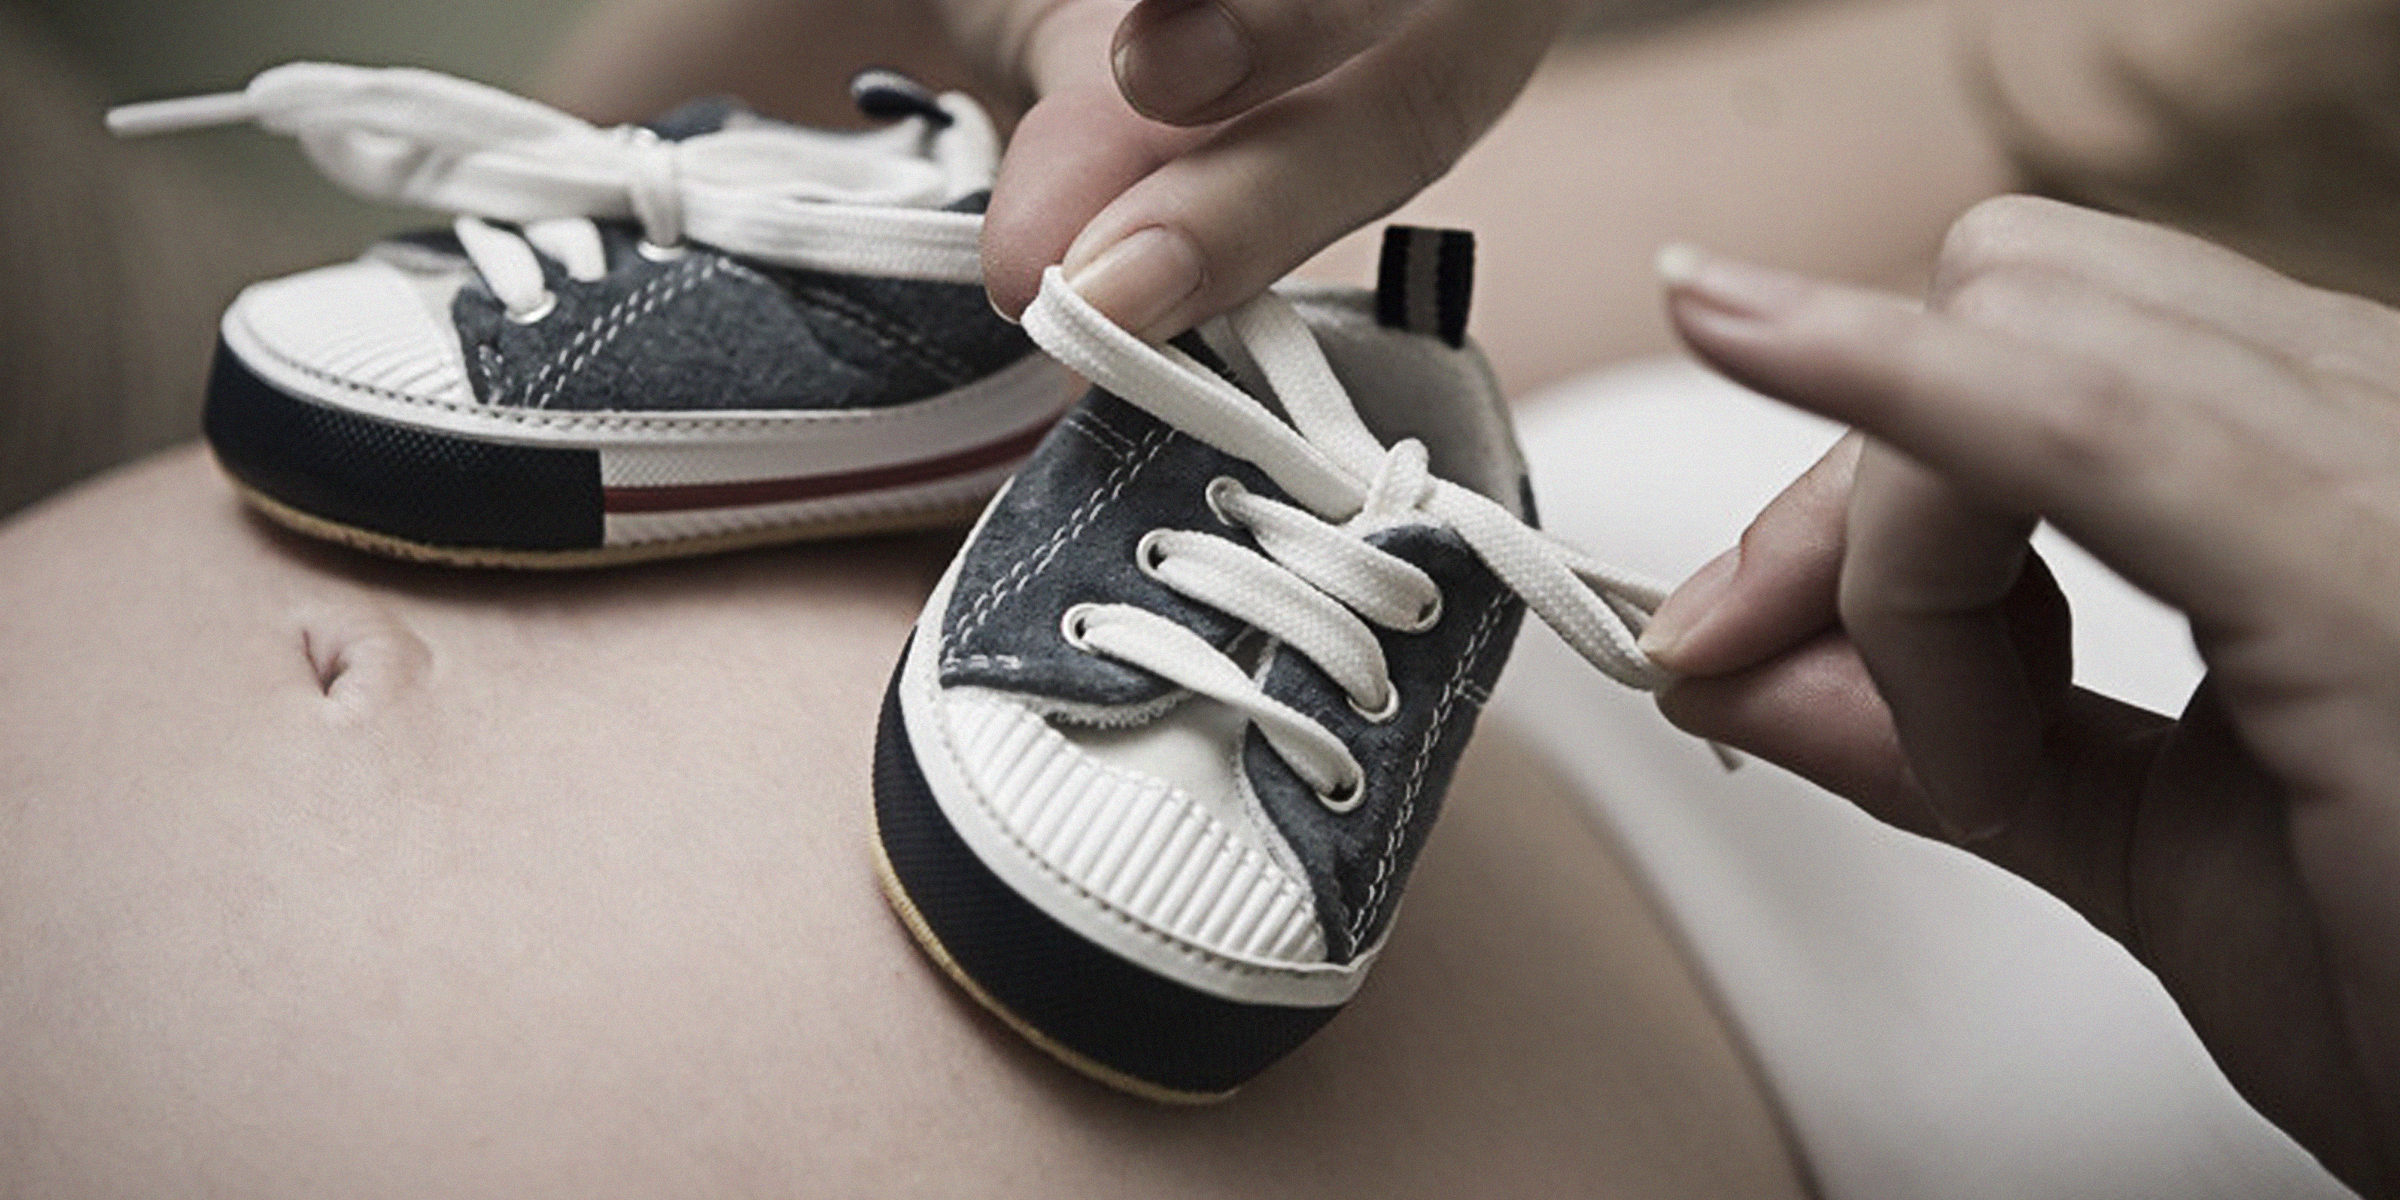 Babyschuhe auf dem Bauch einer schwangeren Frau | Quelle: flickr.com/Ⅿeagan/CC BY 2.0